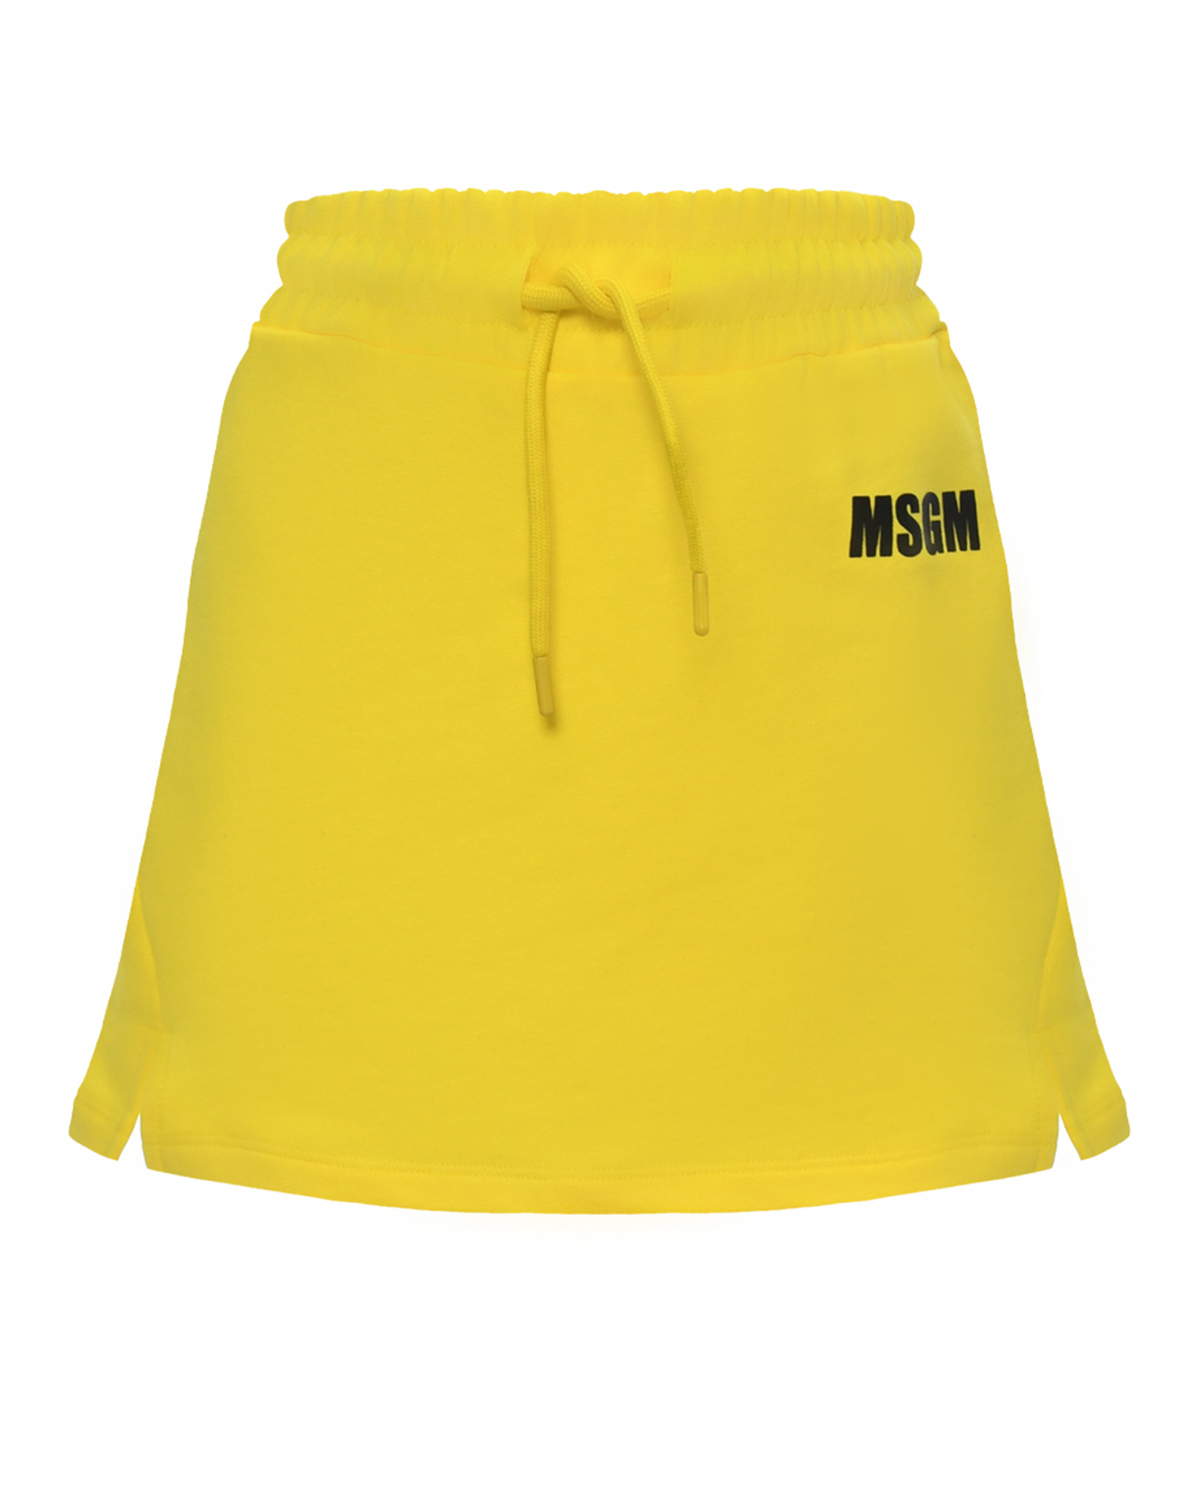 Юбка с принтом сзади, желтая MSGM юбка msgm